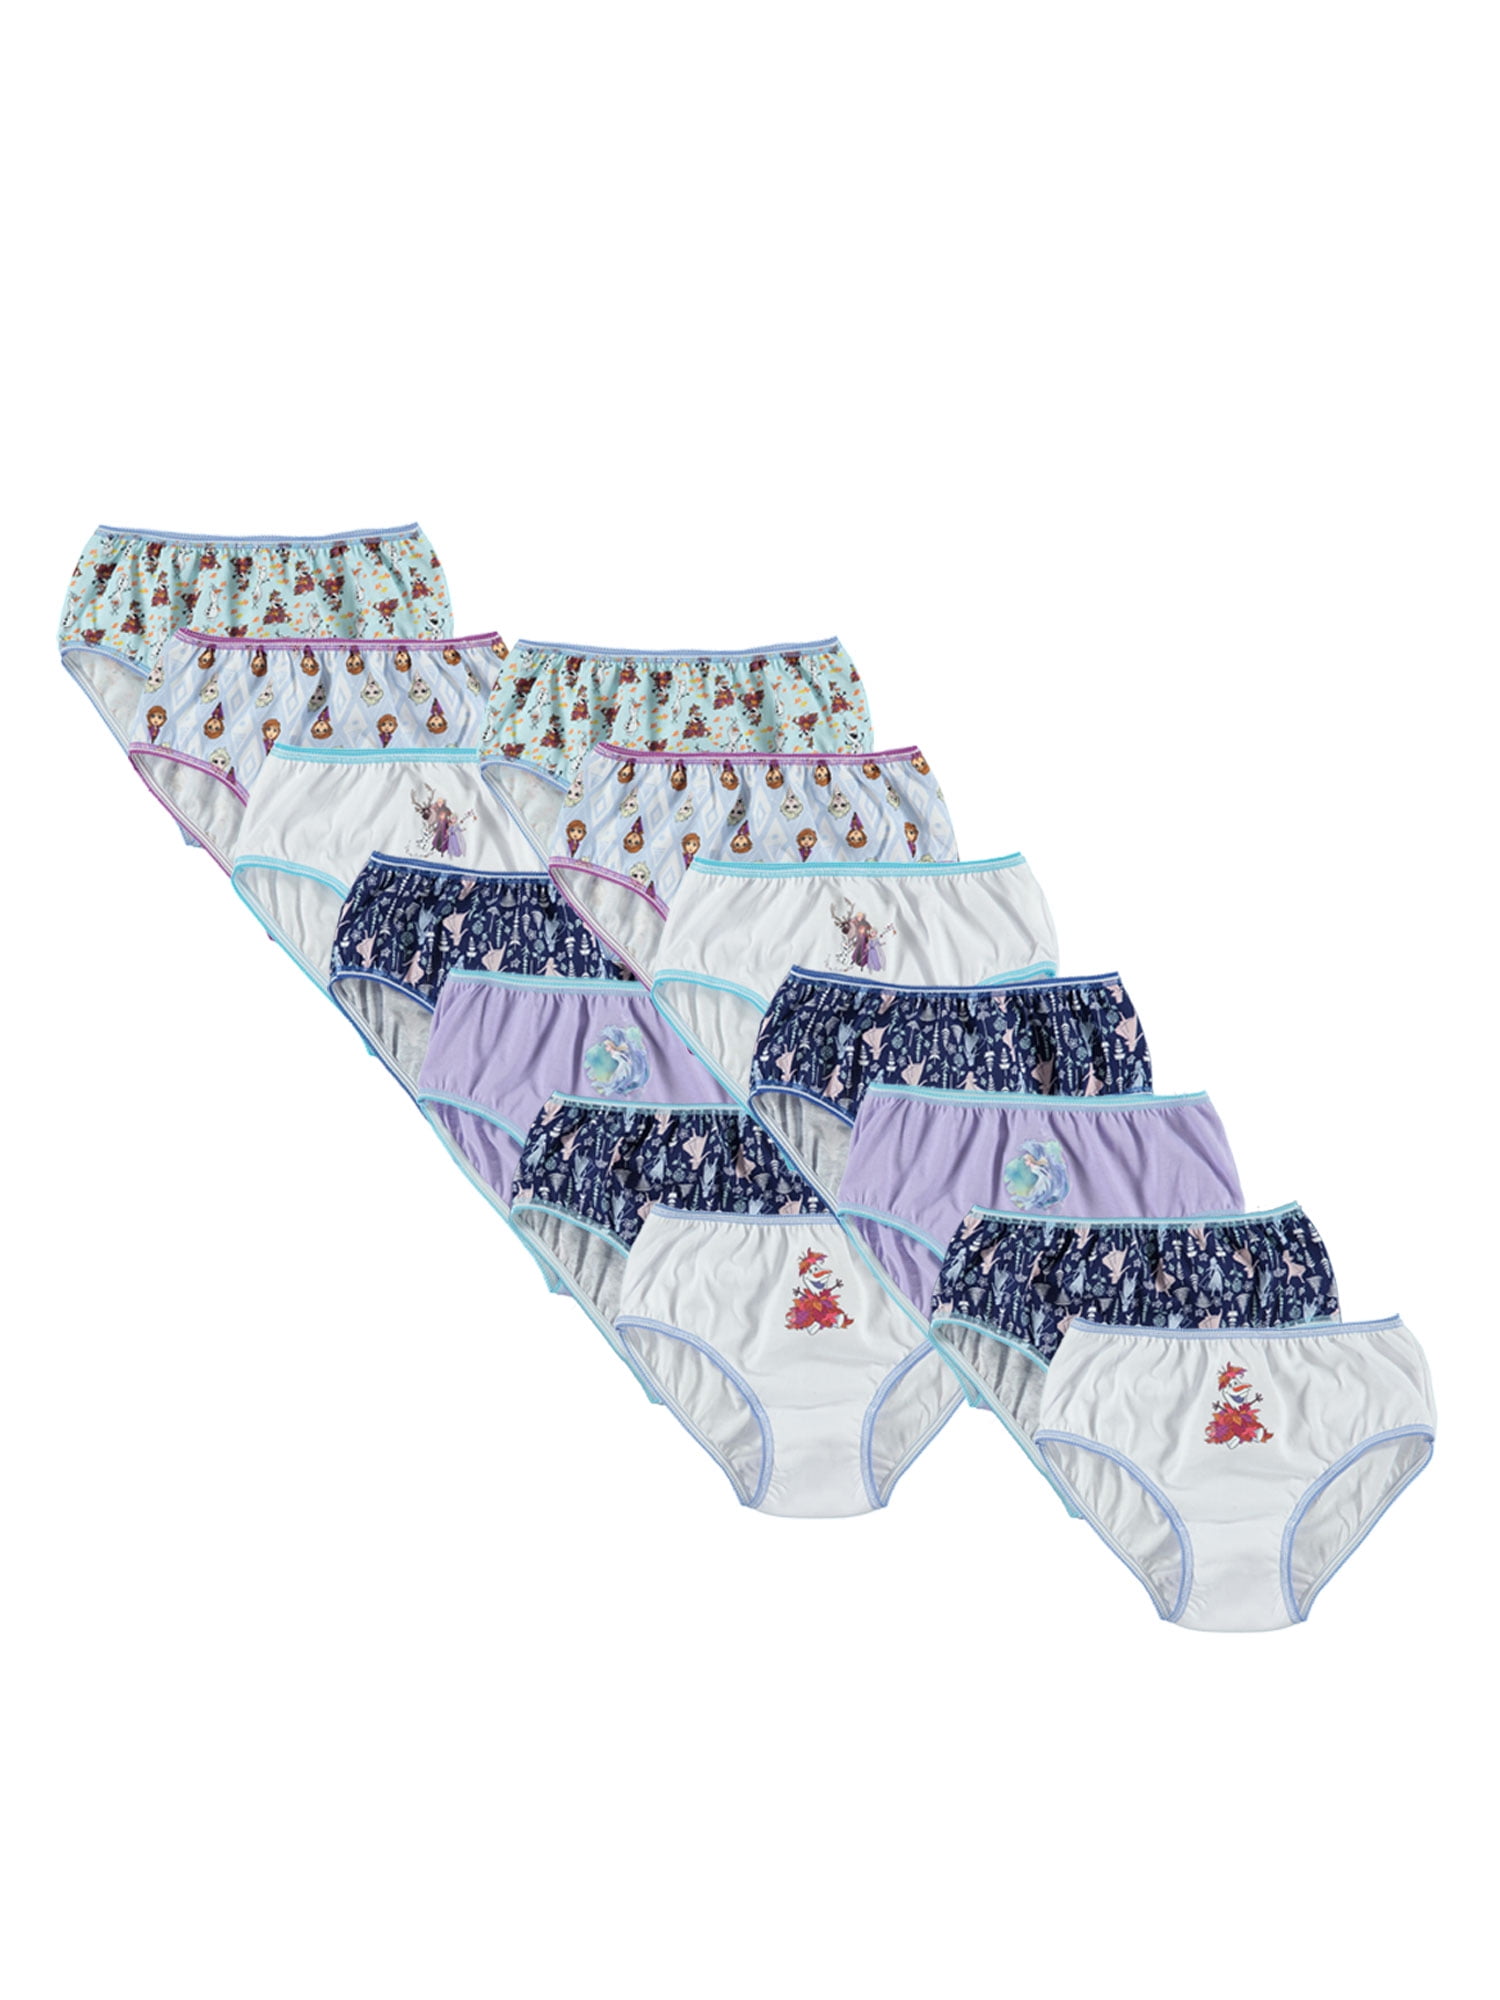 Disney Frozen Girls Brief Underwear 14-Pack, Sizes 4-8 